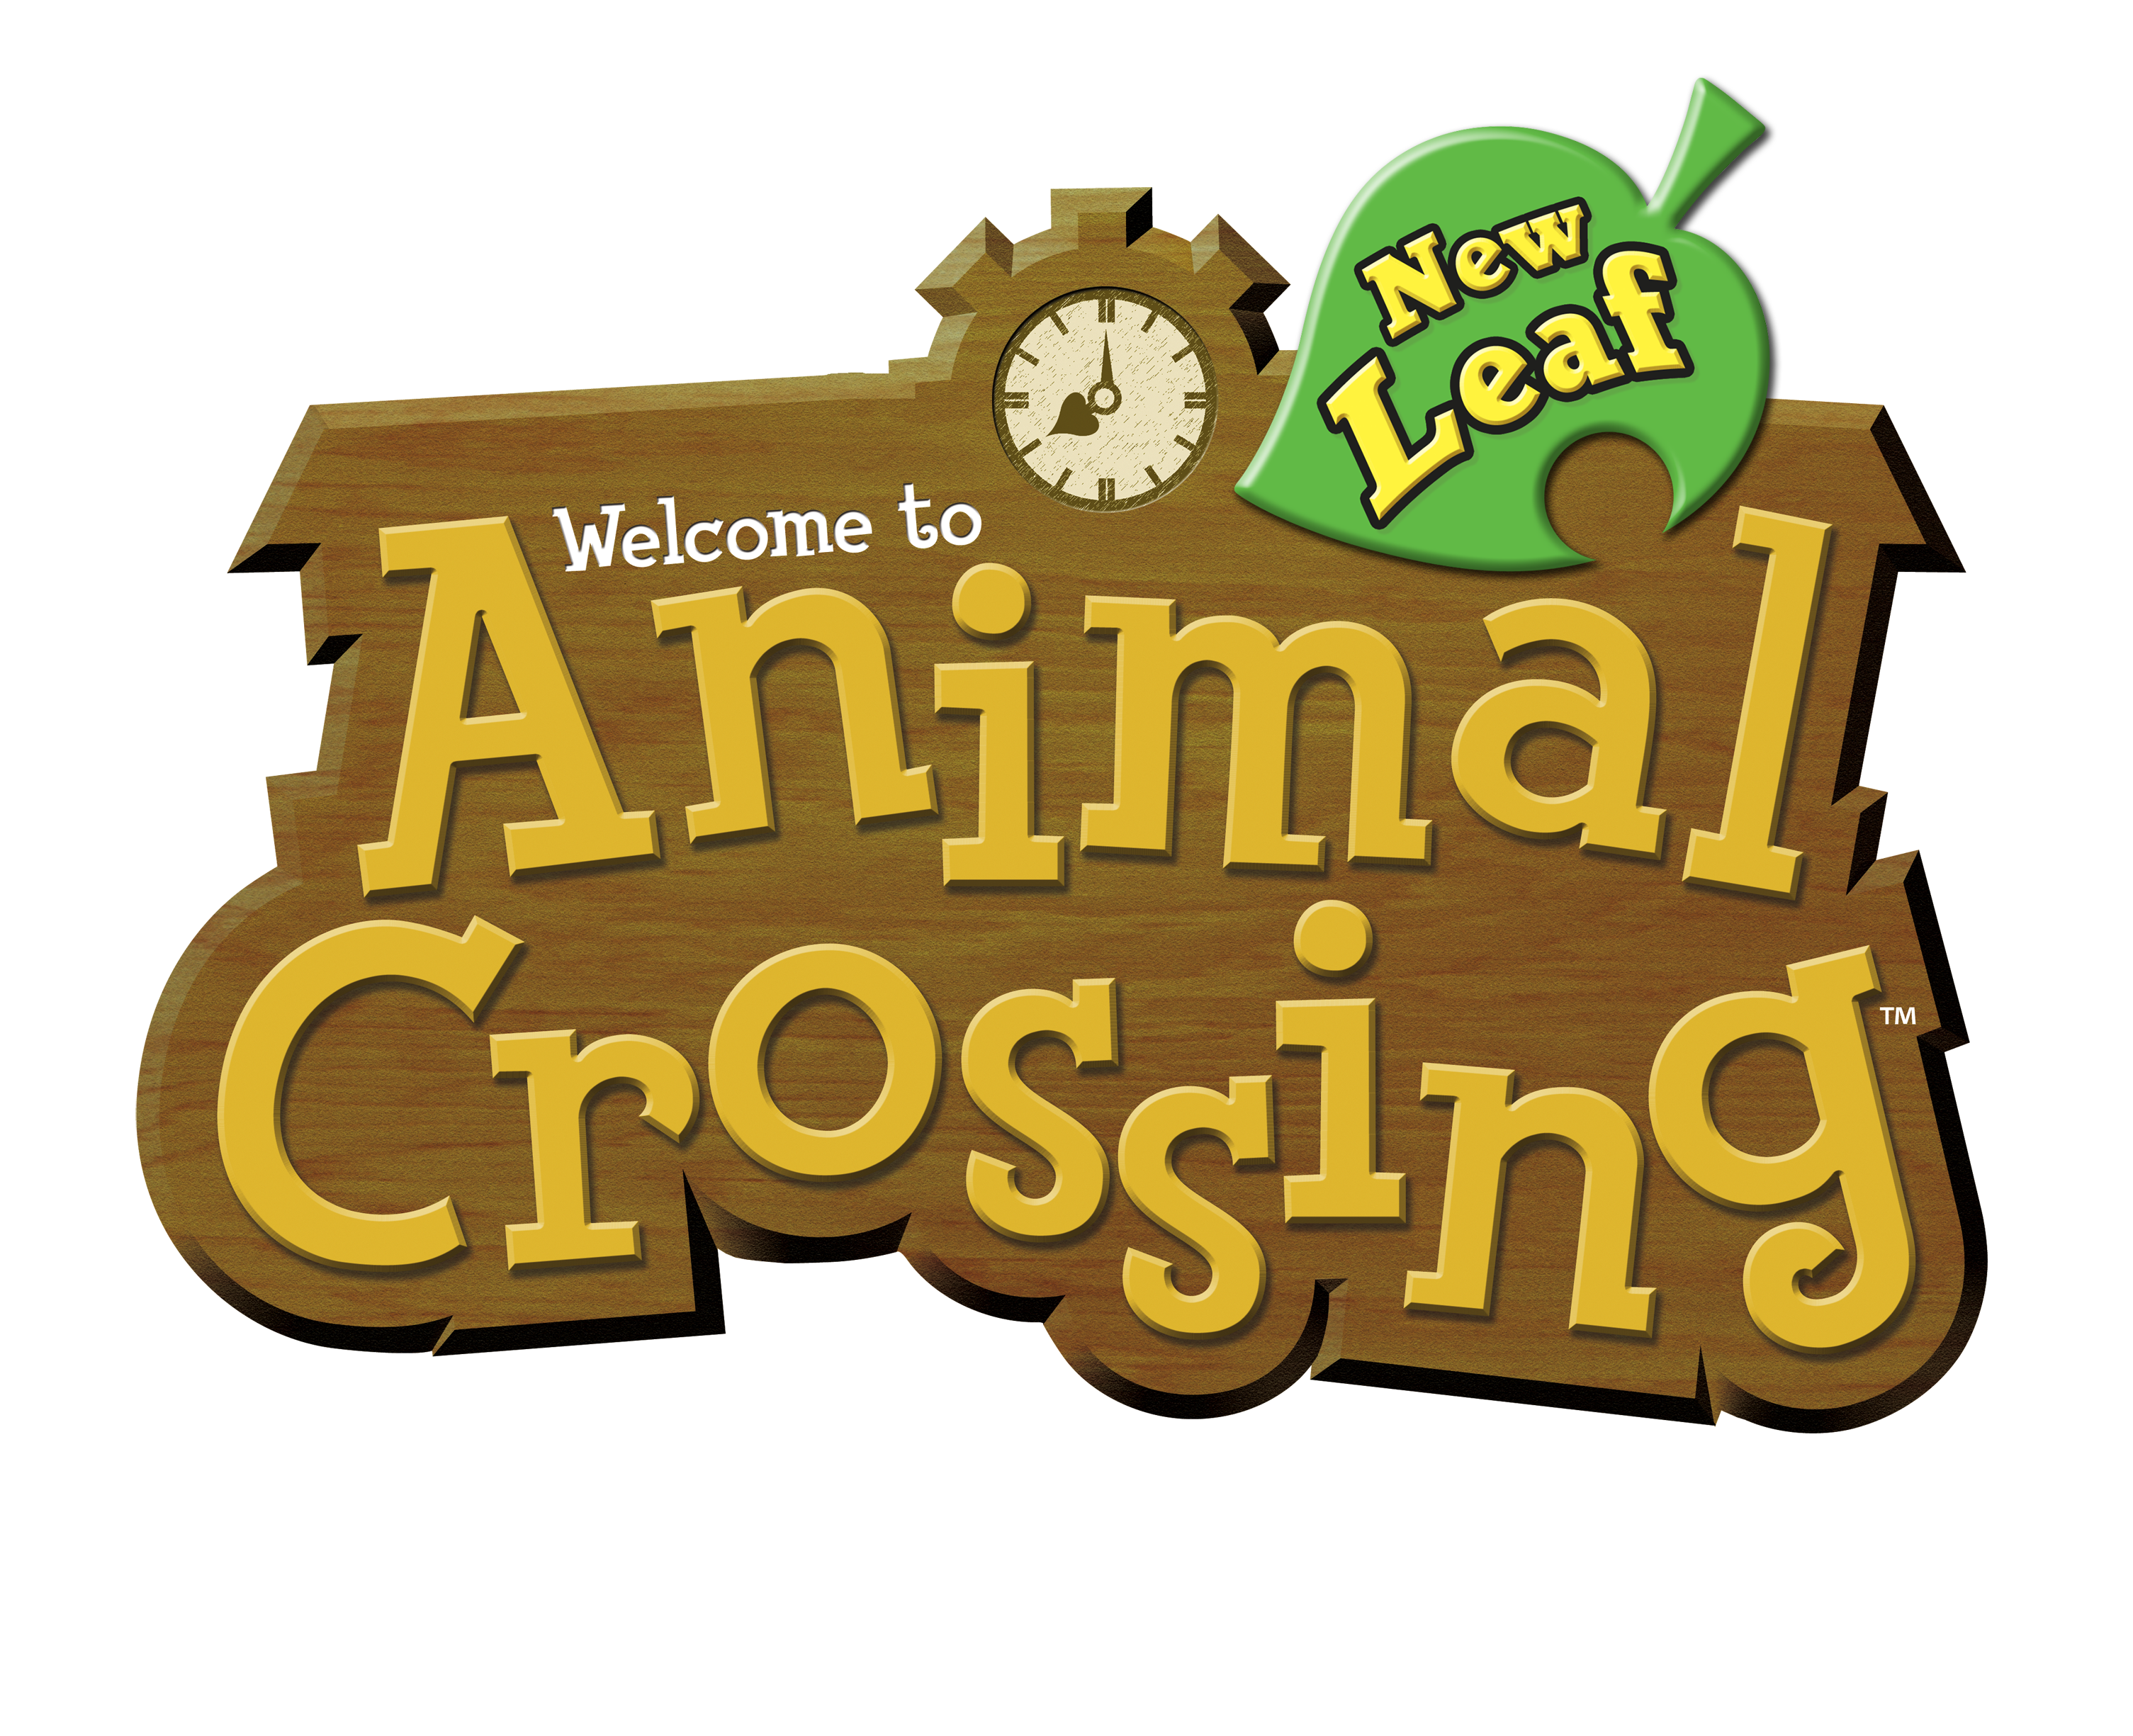 Animal crossing как сделать лестницу